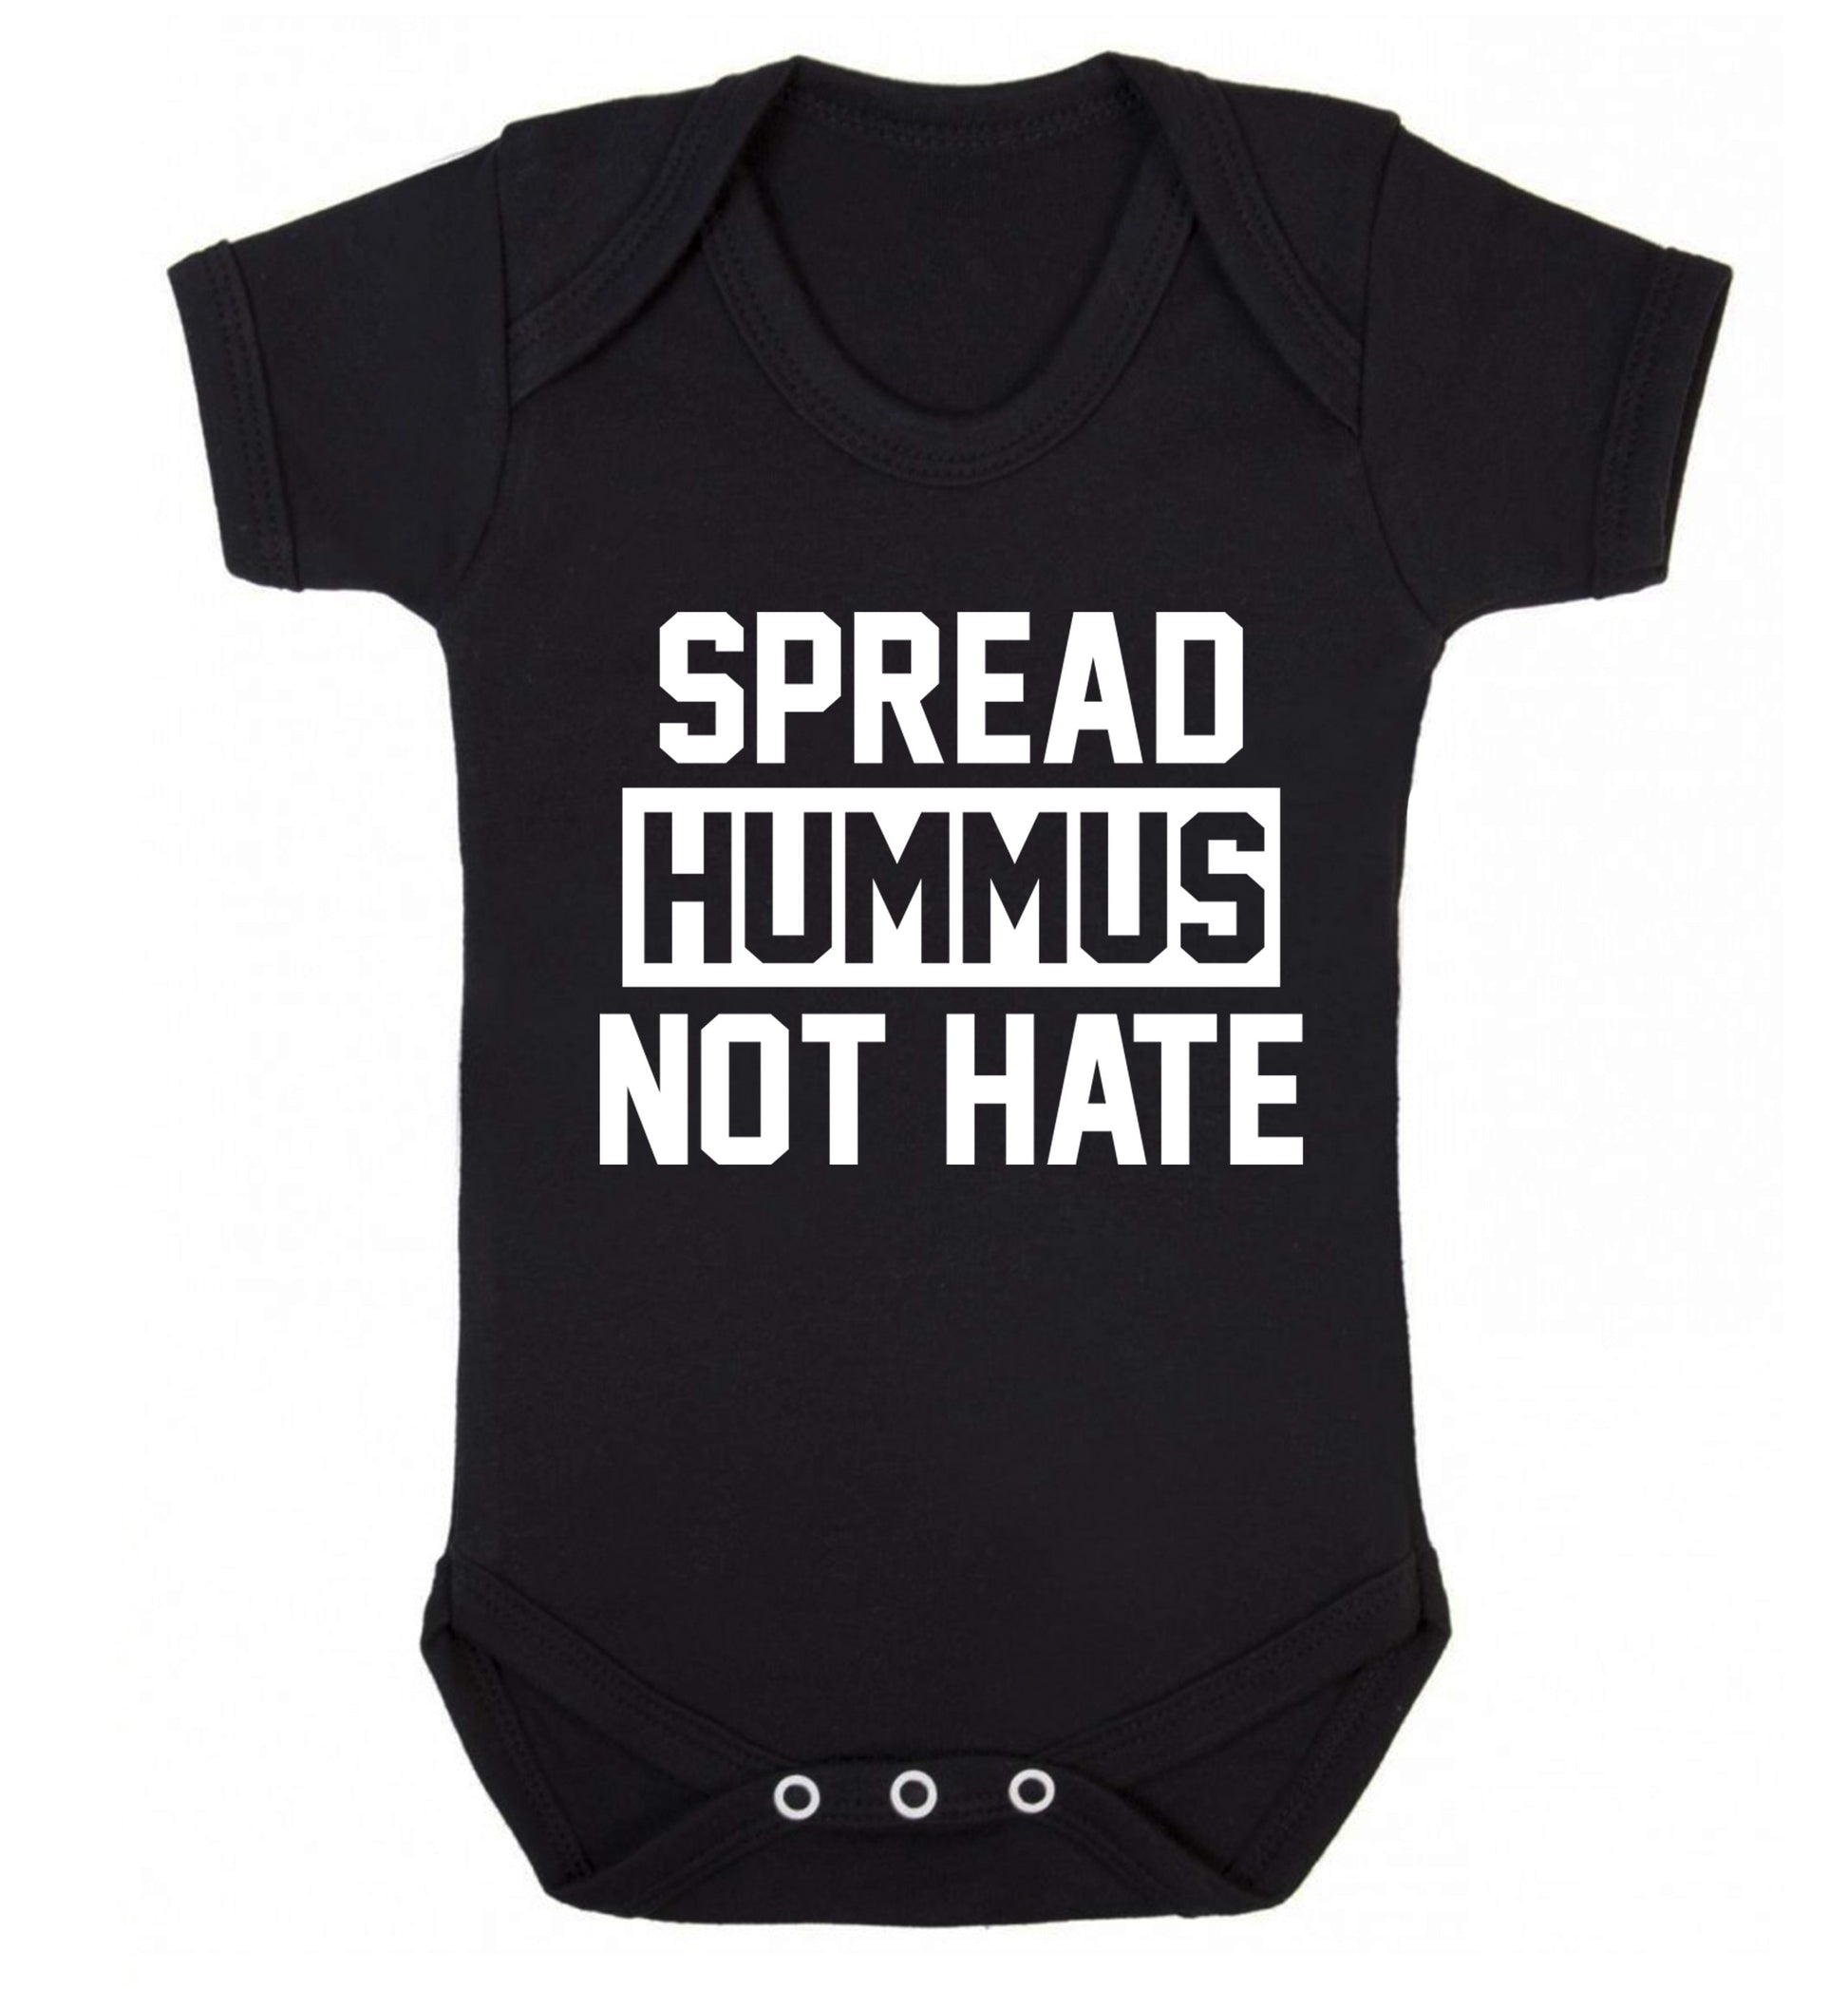 Spread hummus not hate Baby Vest black 18-24 months